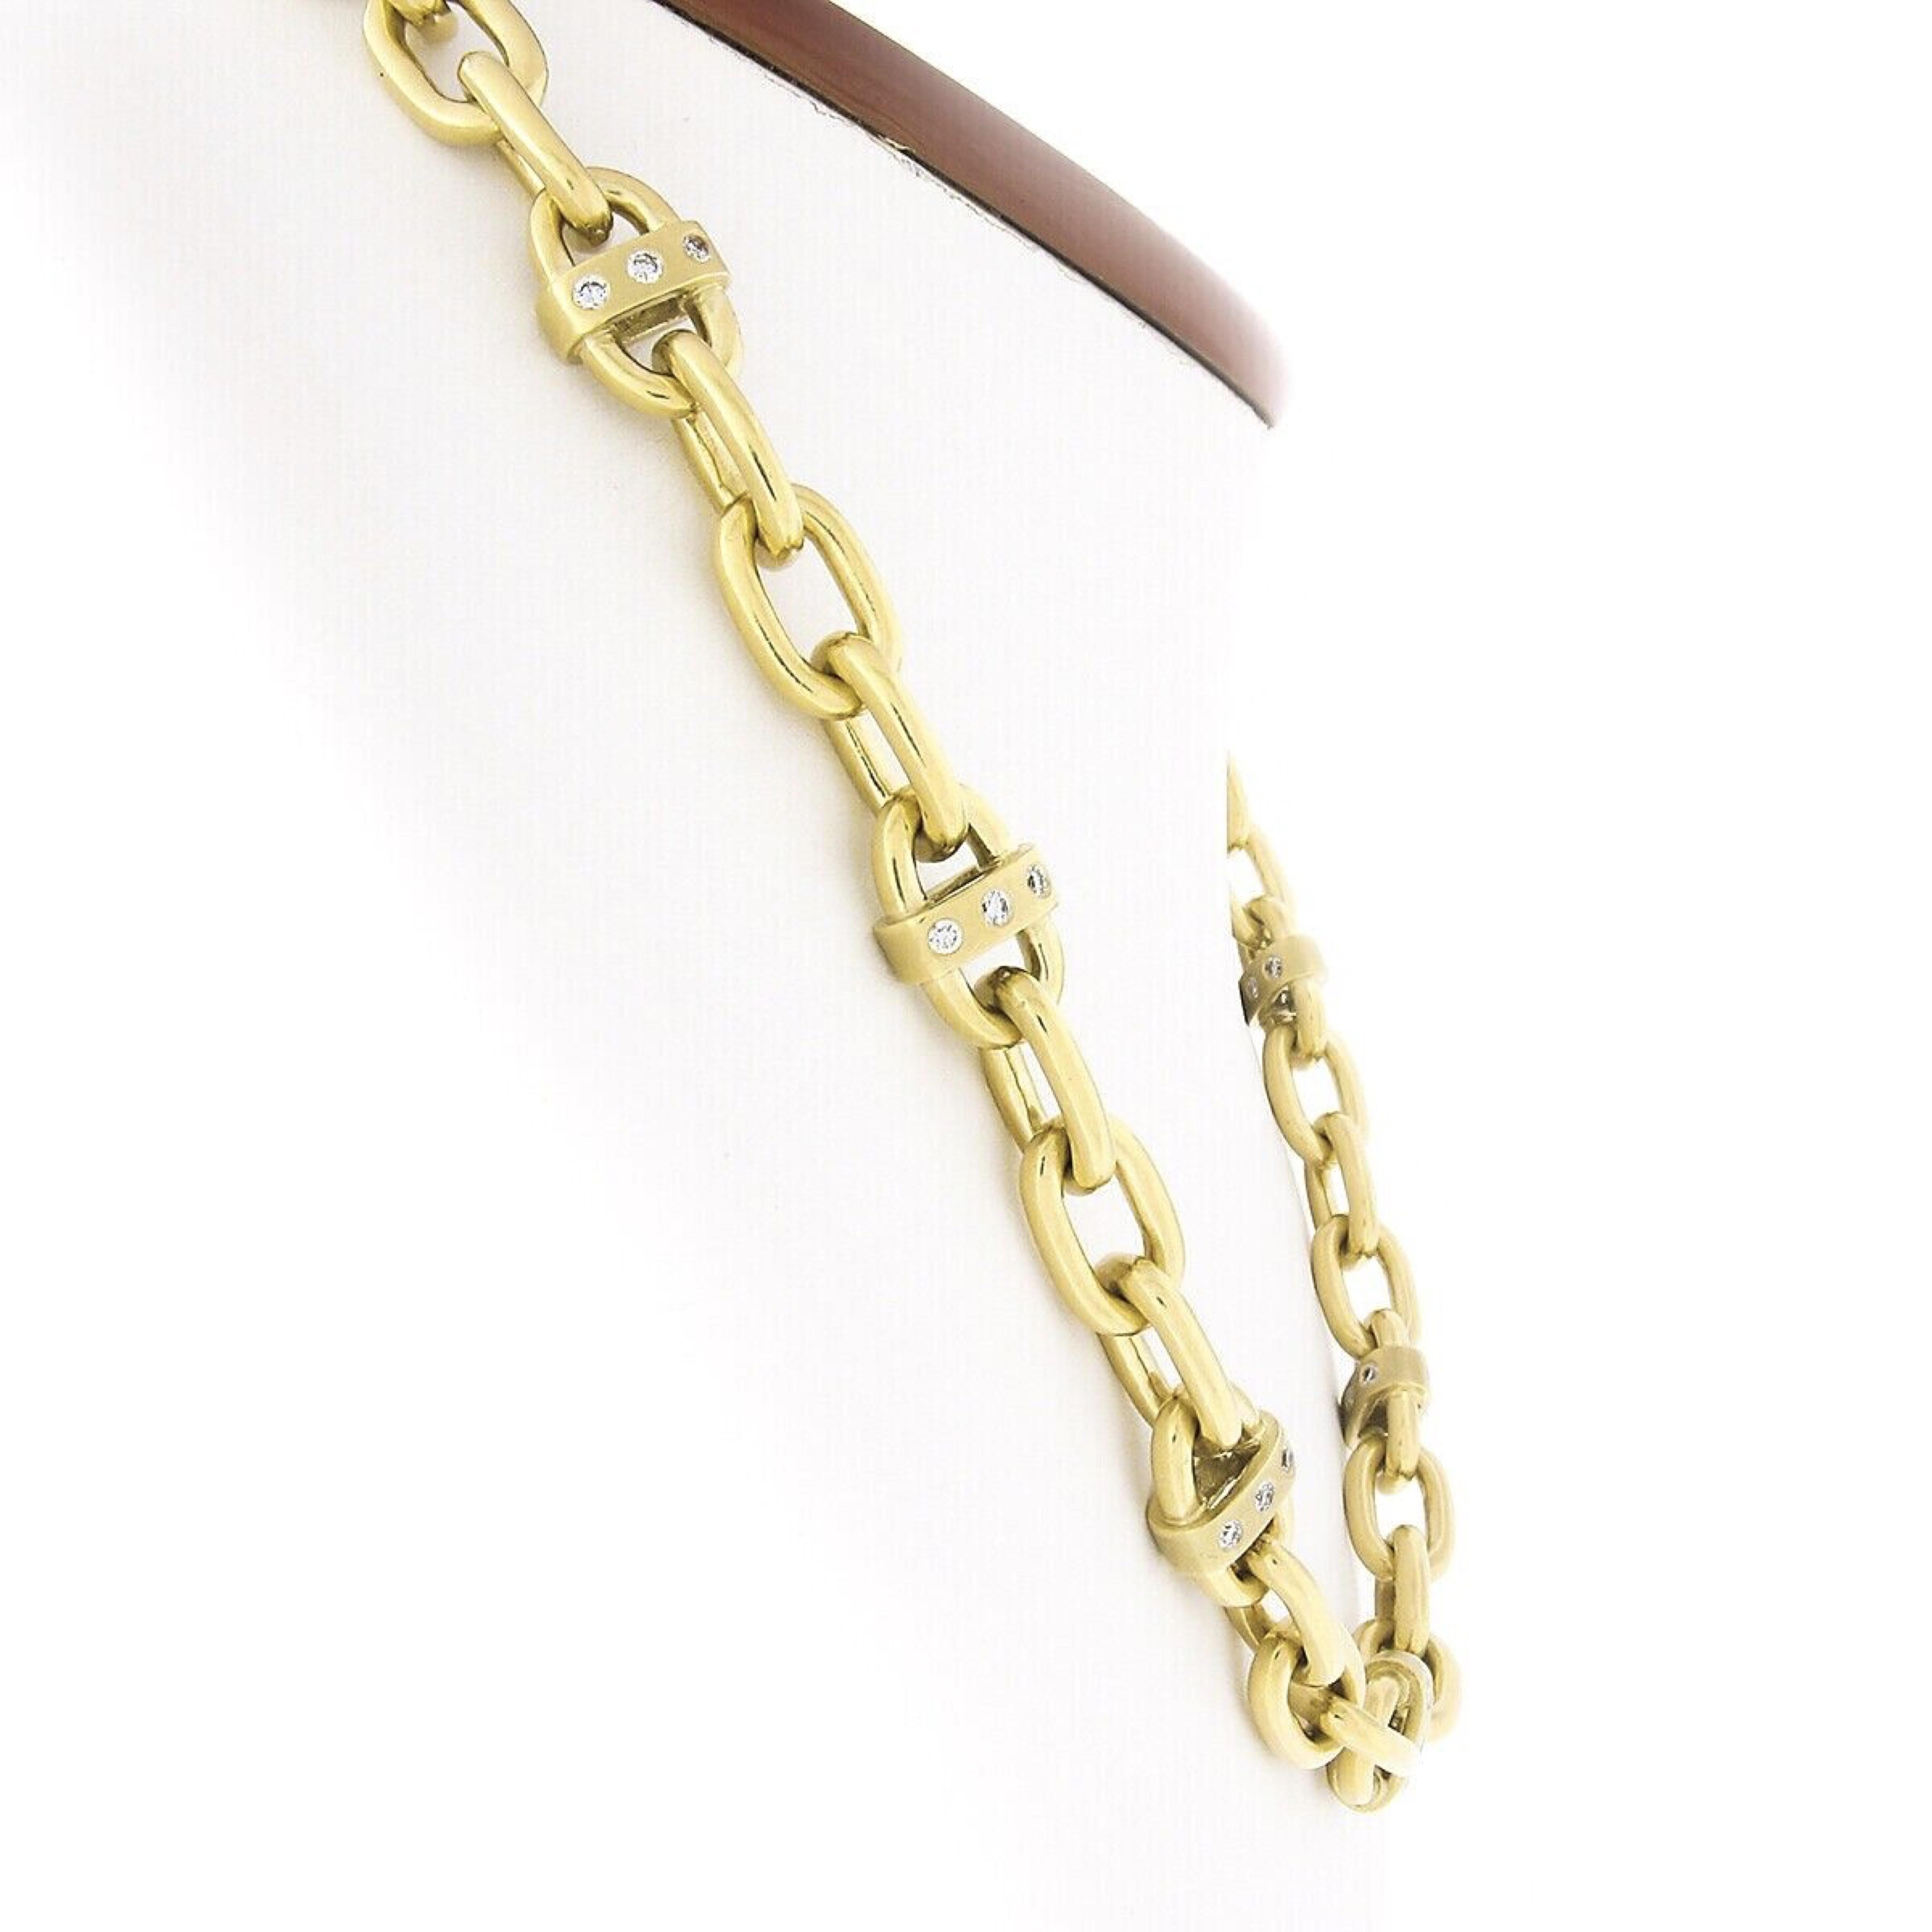 Voici un collier ras du cou absolument audacieux et très bien et solidement fabriqué en or jaune 18 carats. Il comprend des maillons de câble unis et accentués de diamants et un grand fermoir à bascule orné de deux saphirs cabochons. 11 de ces